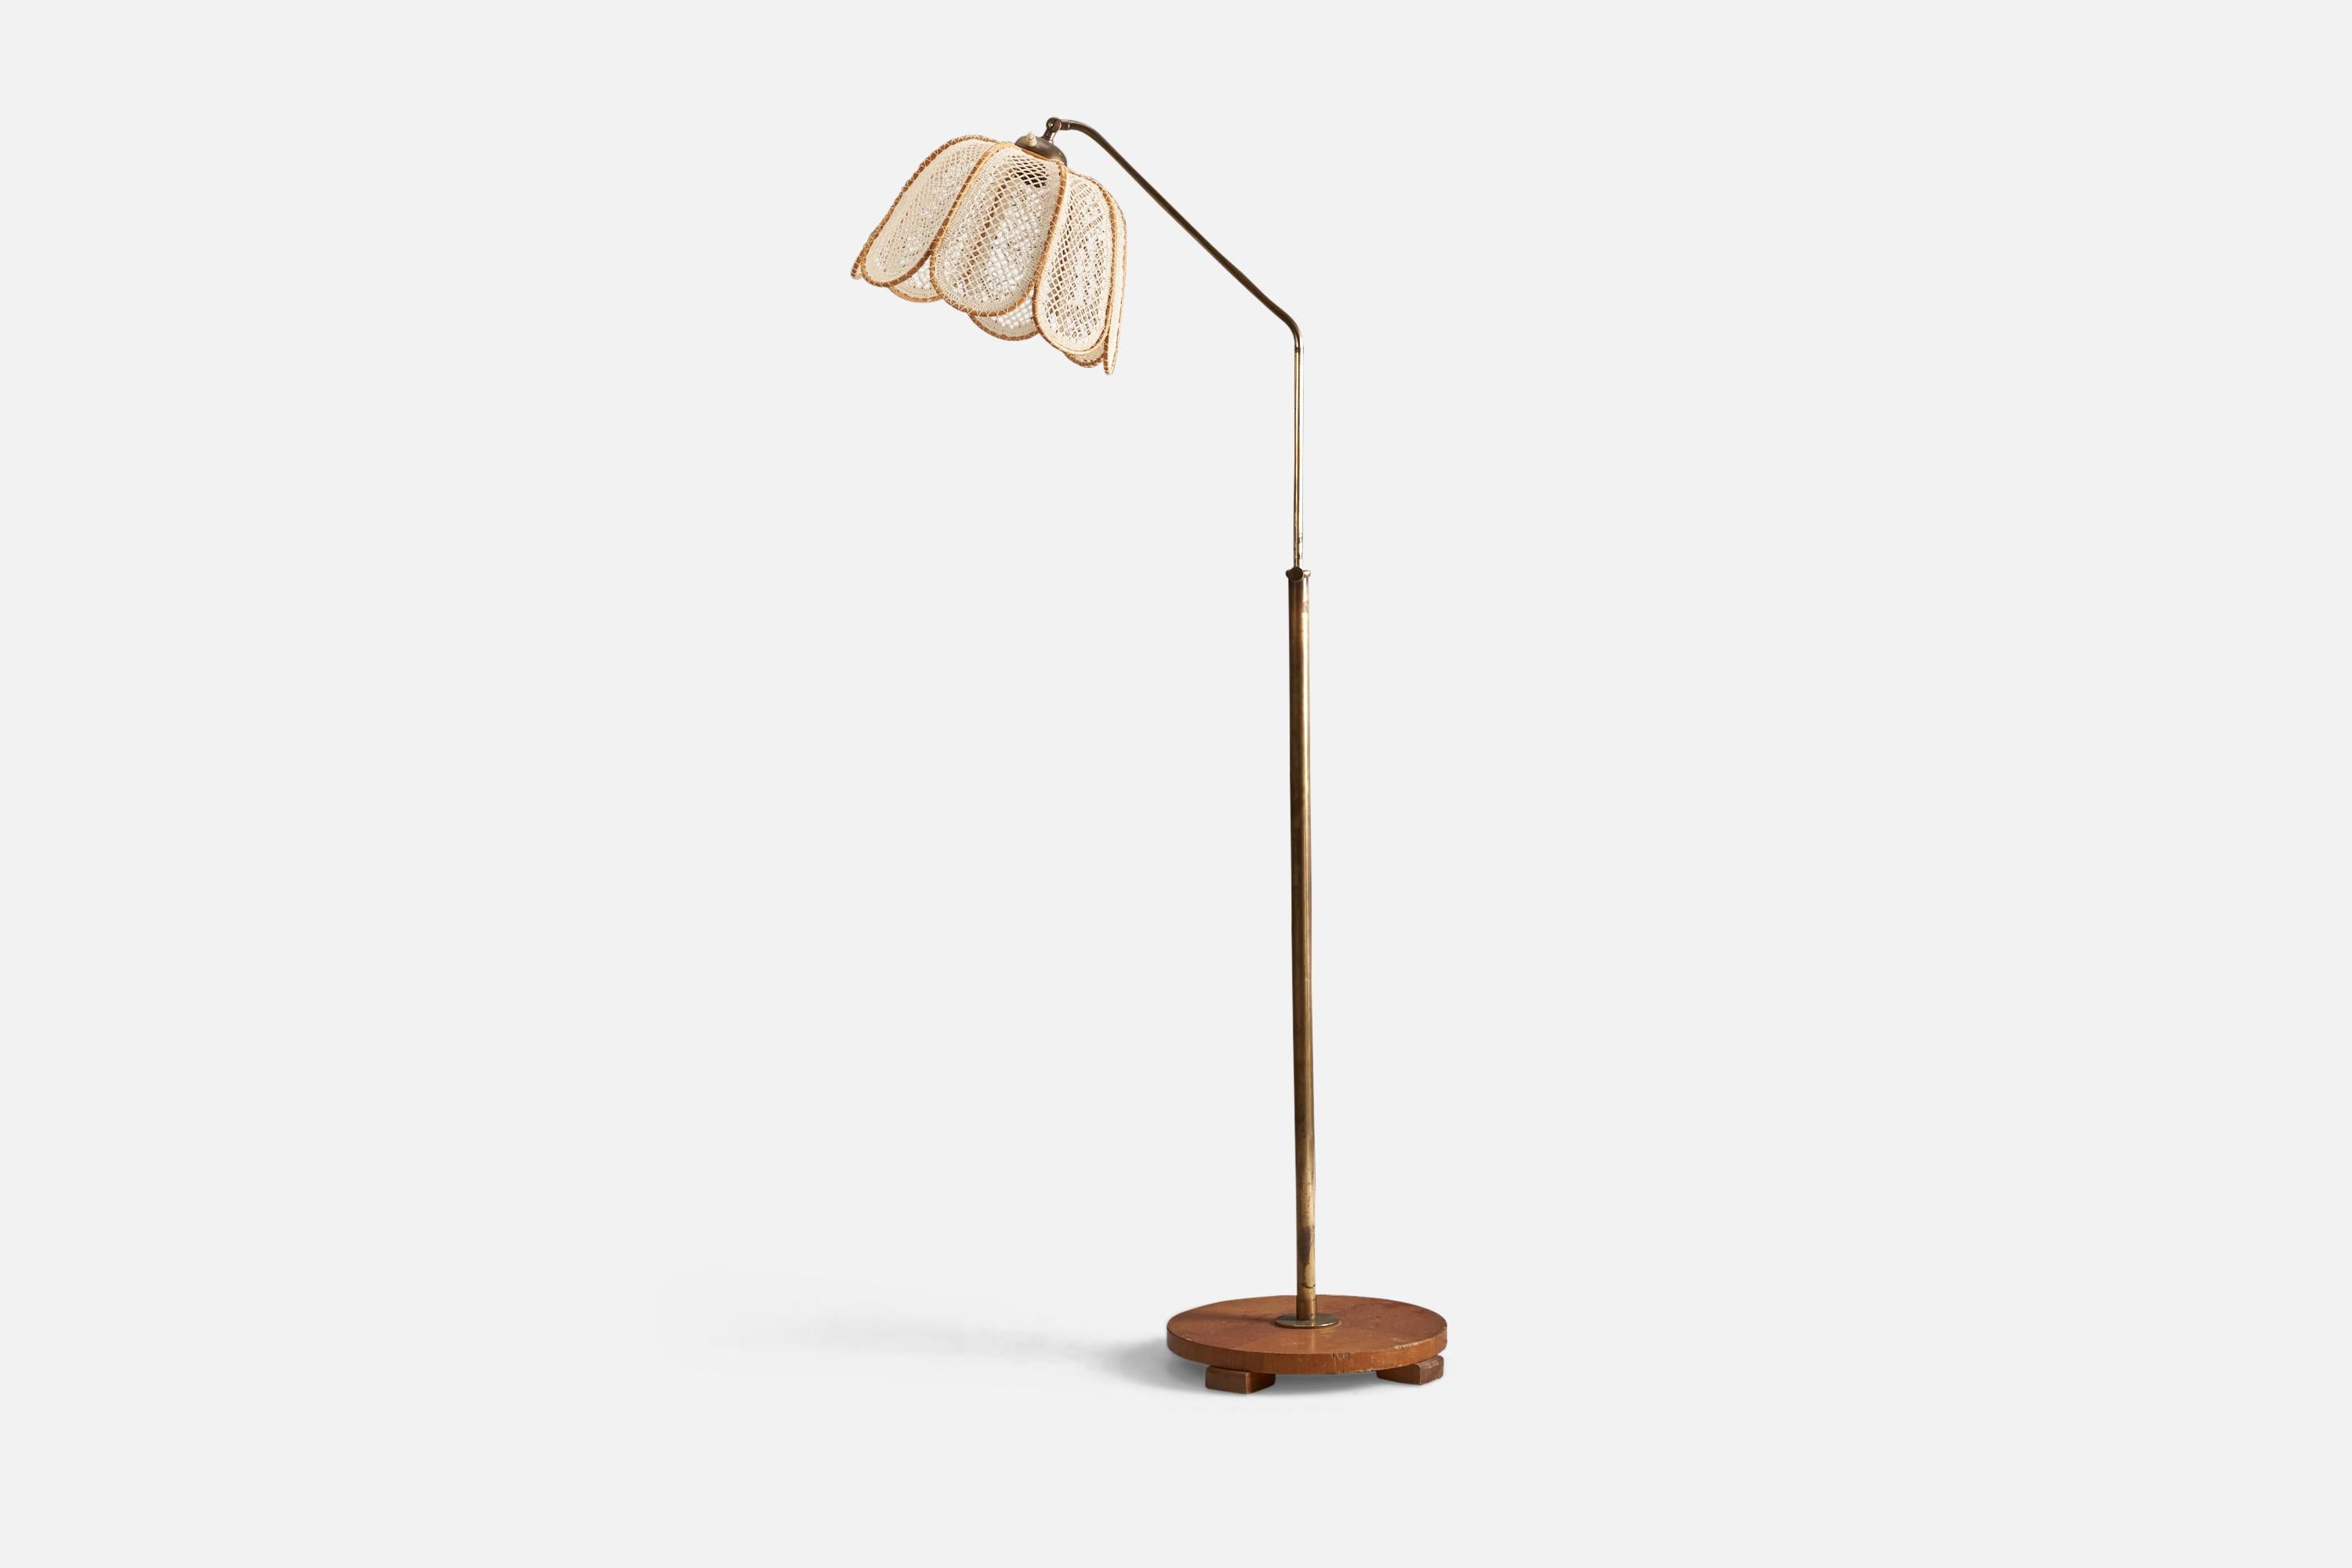 Eine Stehlampe aus Messing, Holz und besticktem Stoff, entworfen und hergestellt von einem schwedischen Designer, Schweden, 1940er Jahre.

Fassung für Standard-Glühbirne E-26 mit mittlerem Sockel.

Auf der Leuchte ist keine maximale Wattzahl